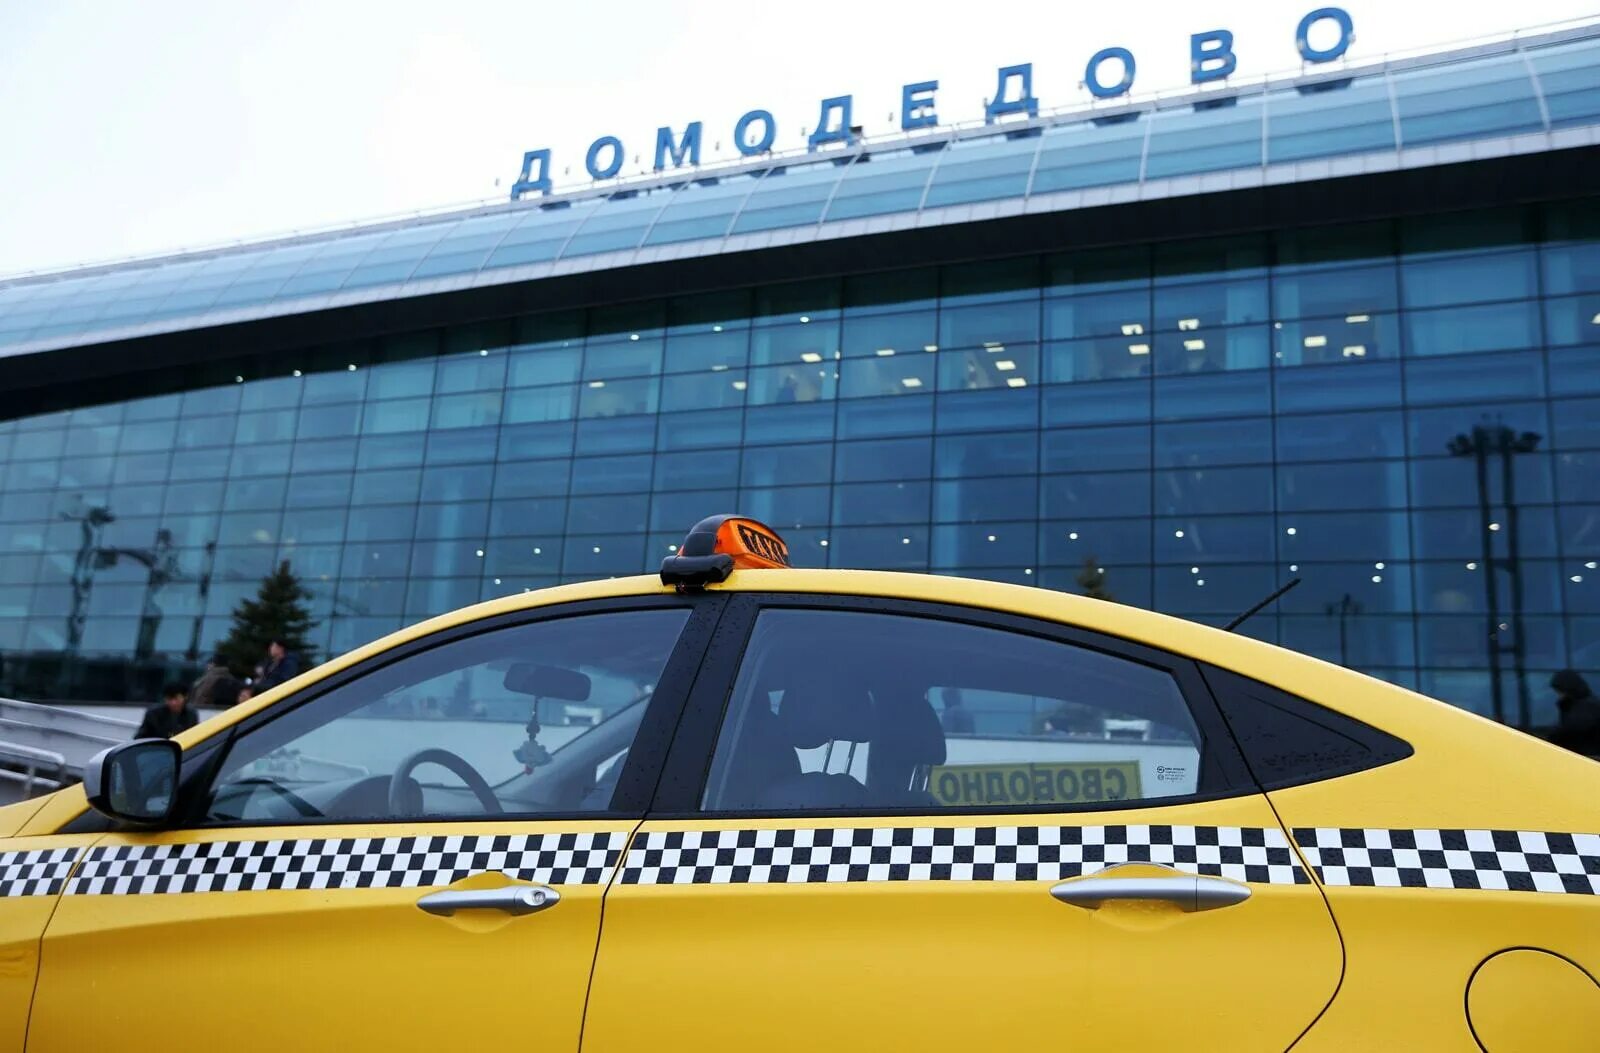 Аэропорт Домодедово такси. Такси около аэропорта Домодедово. Шереметьево-Домодедово такси. Такси в аэропорт Шереметьево. Такси домодедово телефон